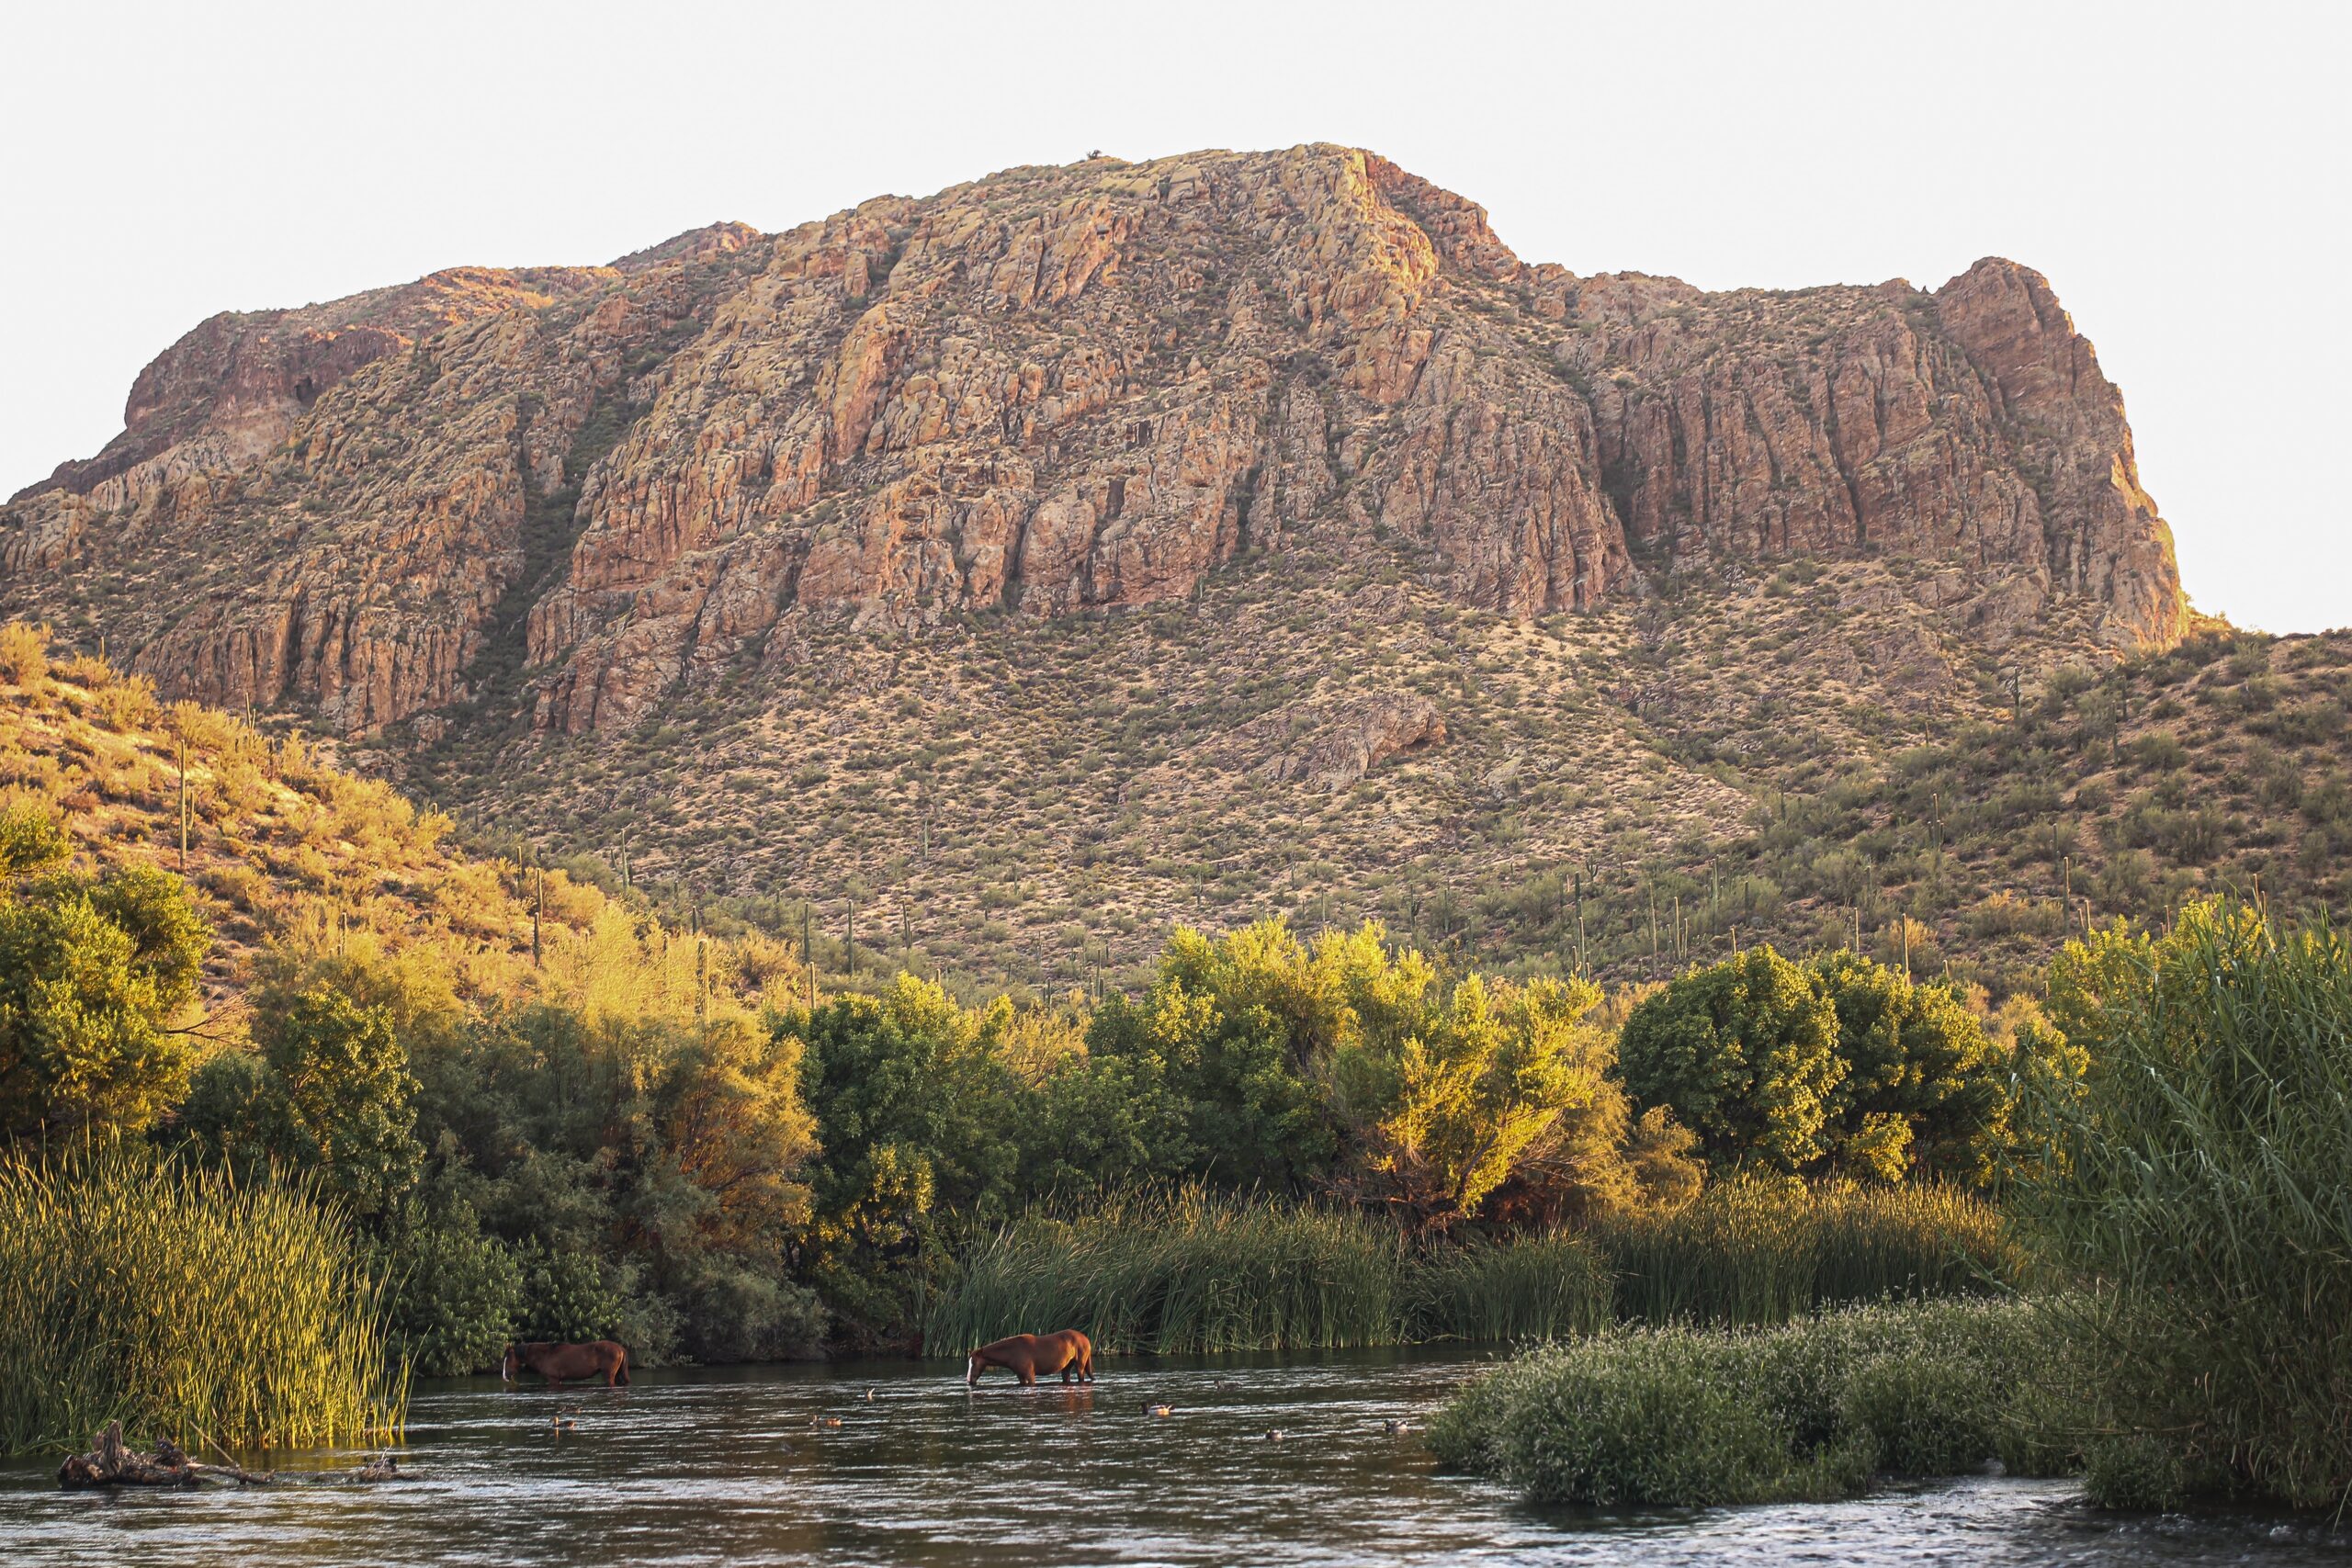 Kayaking Salt River in Arizona